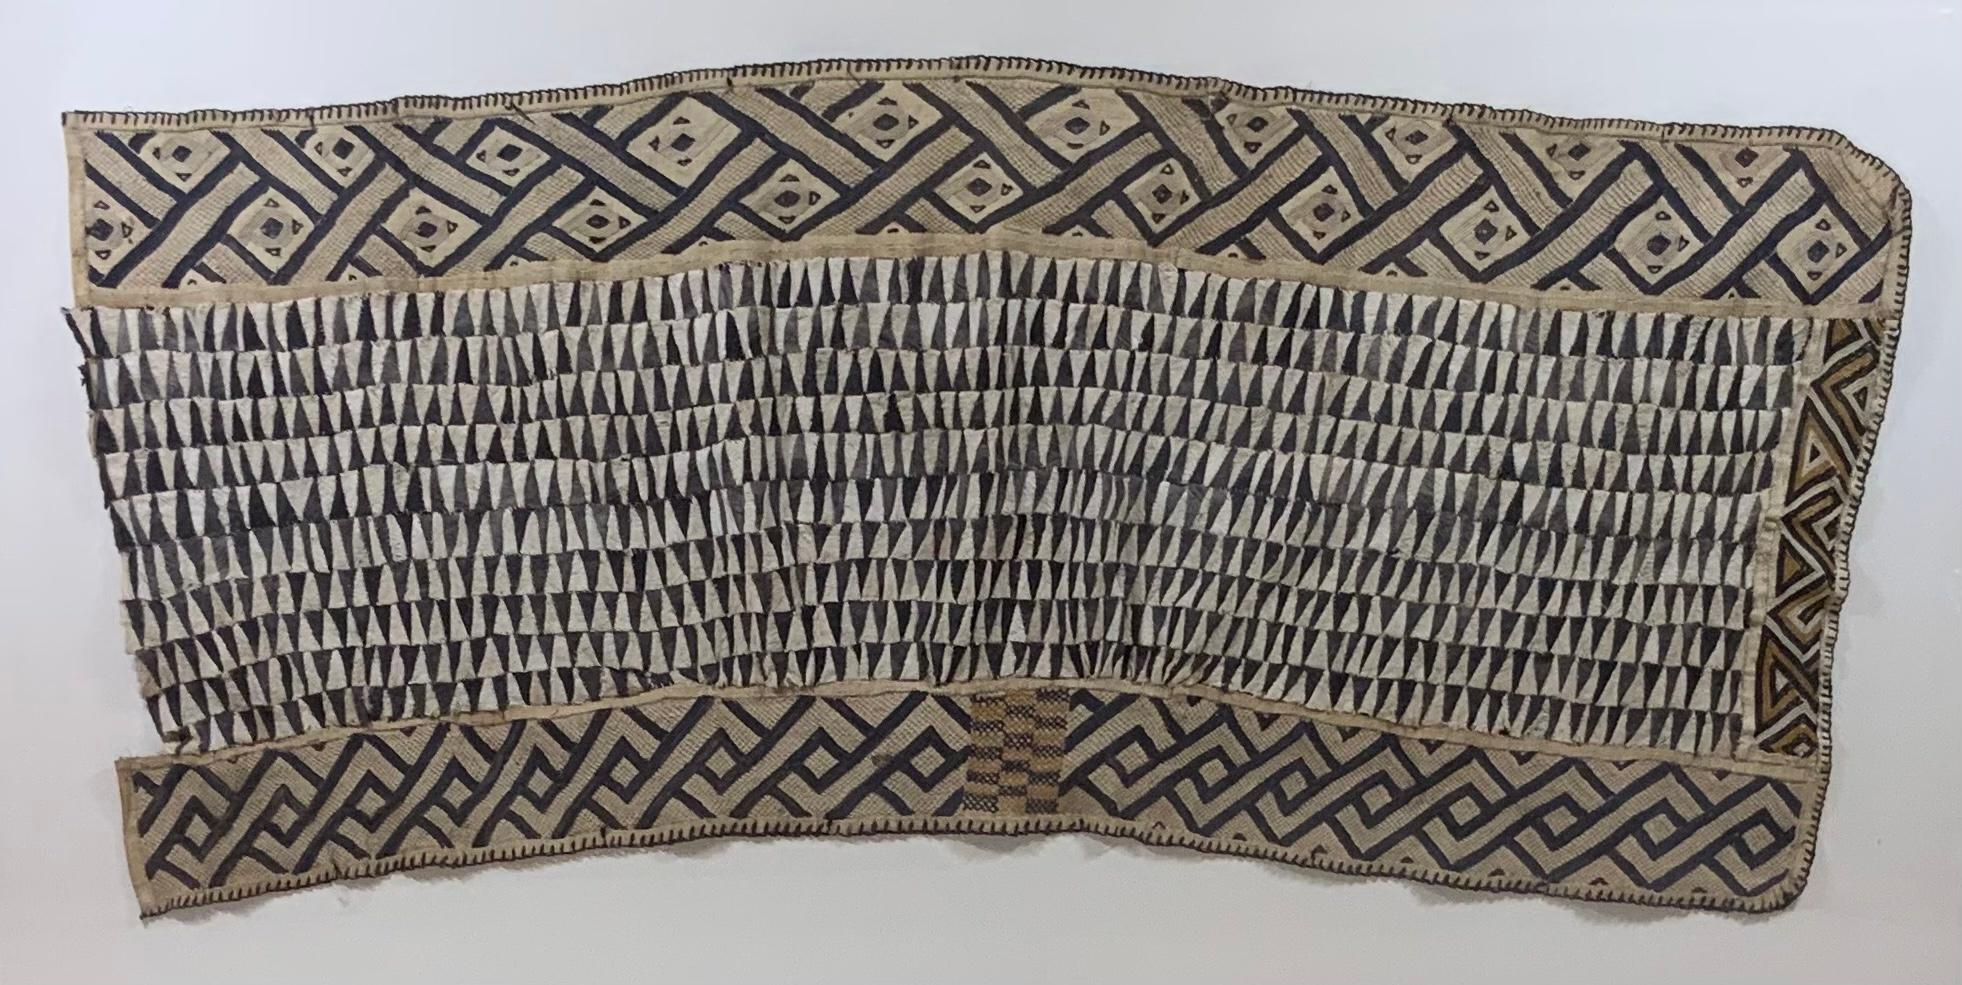 Textile africain ancien exceptionnel monté par des professionnels avec de petits fragments de textile marron tissés dans le motif géométrique en raphia et patchwork de coton, panneau d'application de bordure en interlock autour de trois côtés du